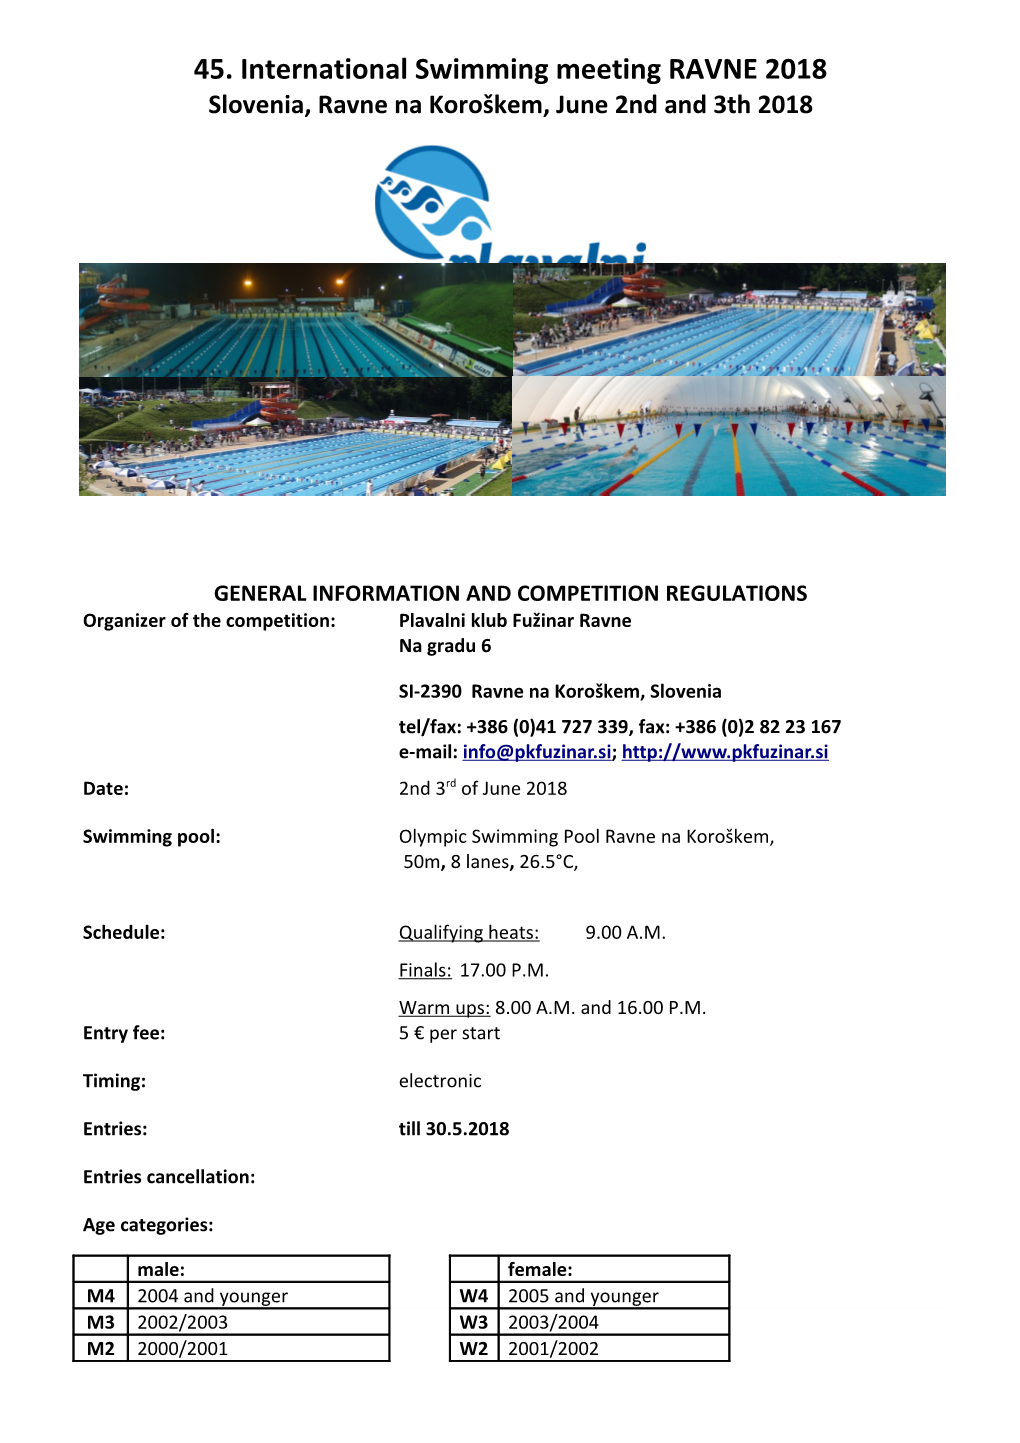 45. International Swimming Meeting RAVNE 2018